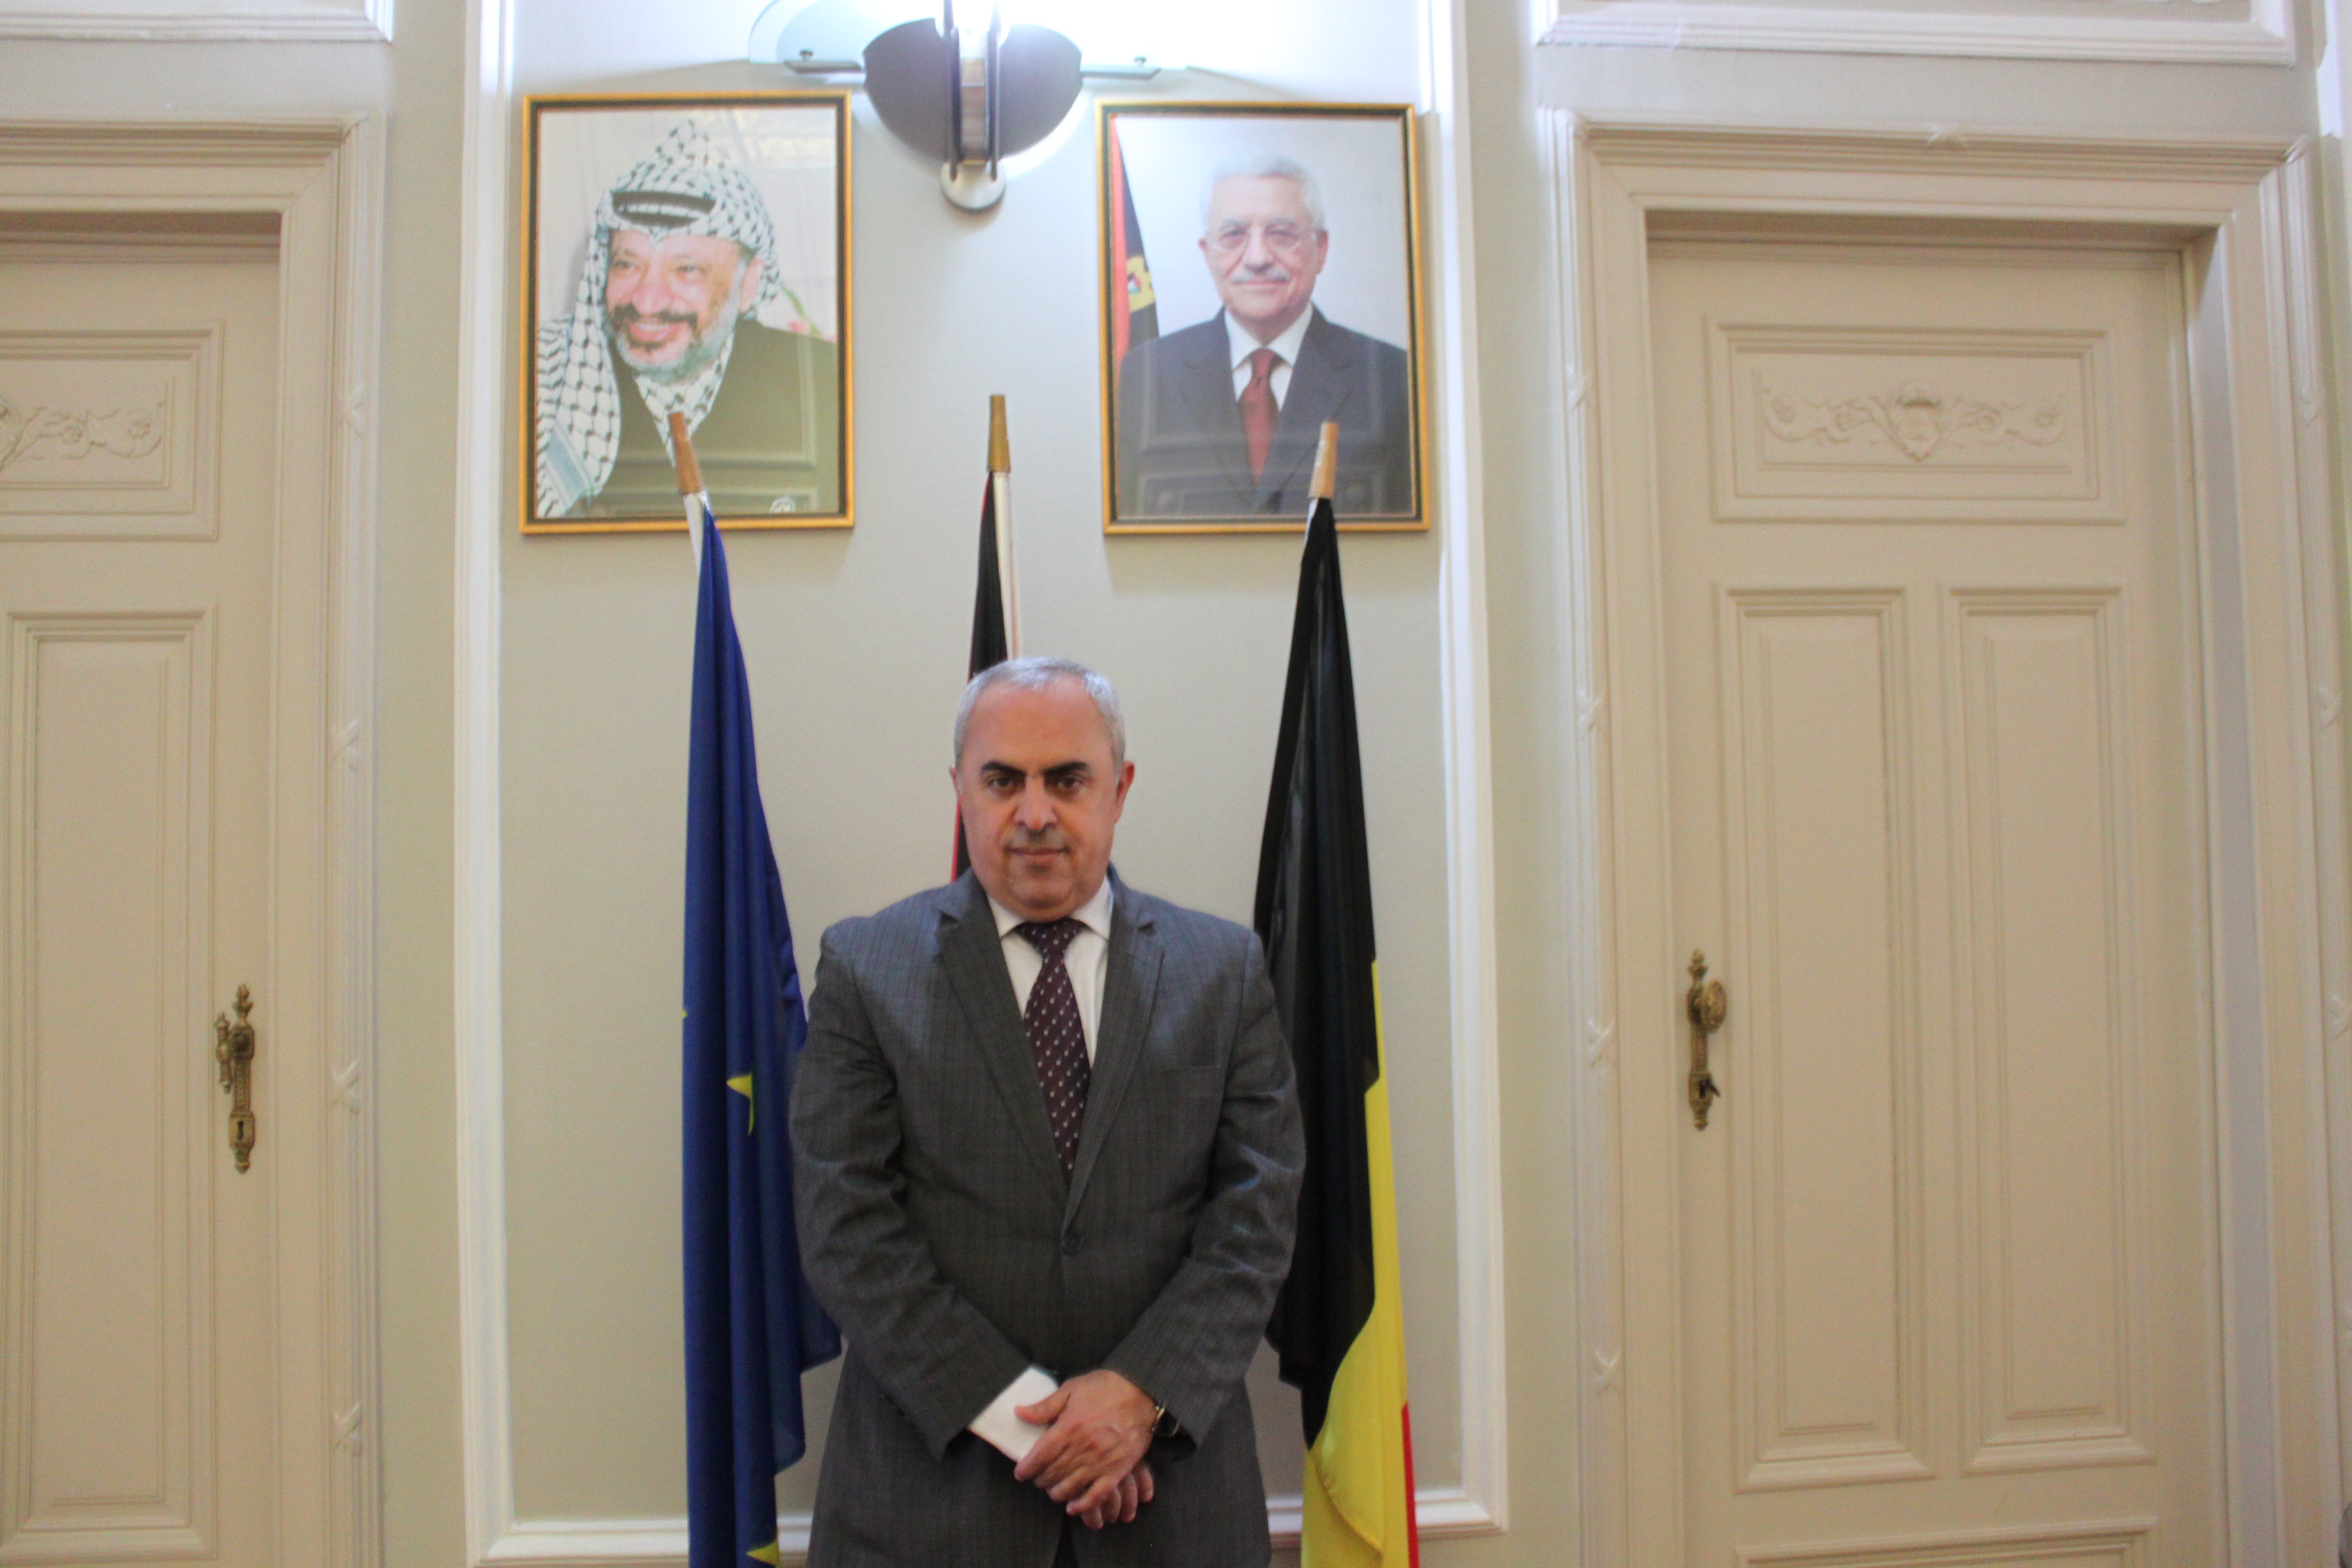 Palestijns ambassadeur: ‘Ik roep de EU op om het vredesproces in handen te nemen’